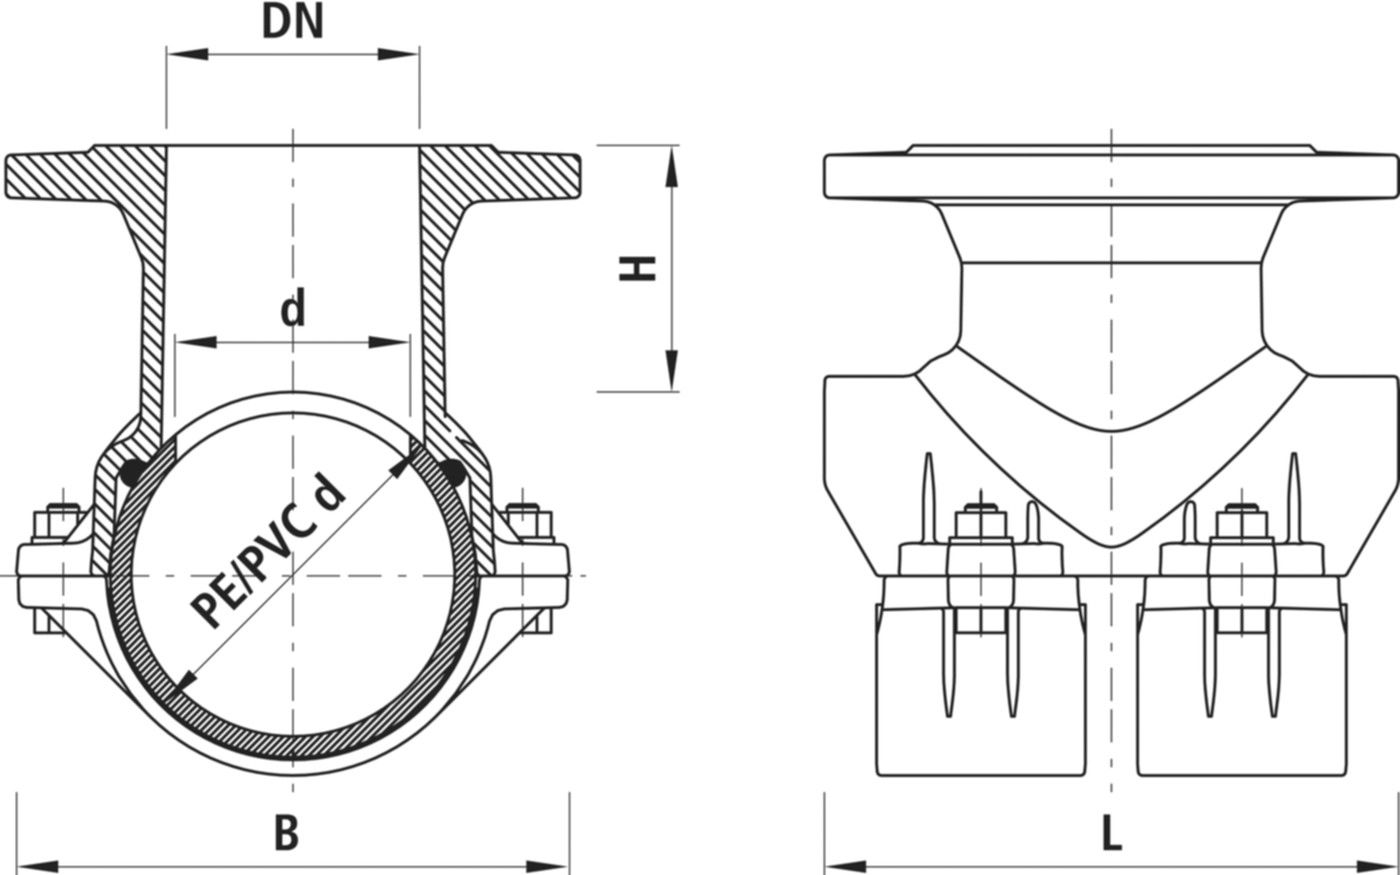 Haku-Anbohrschelle mit Flansch 5230 d 200mm / DN 80 - Hawle Hausanschluss- und Anbohrarmaturen